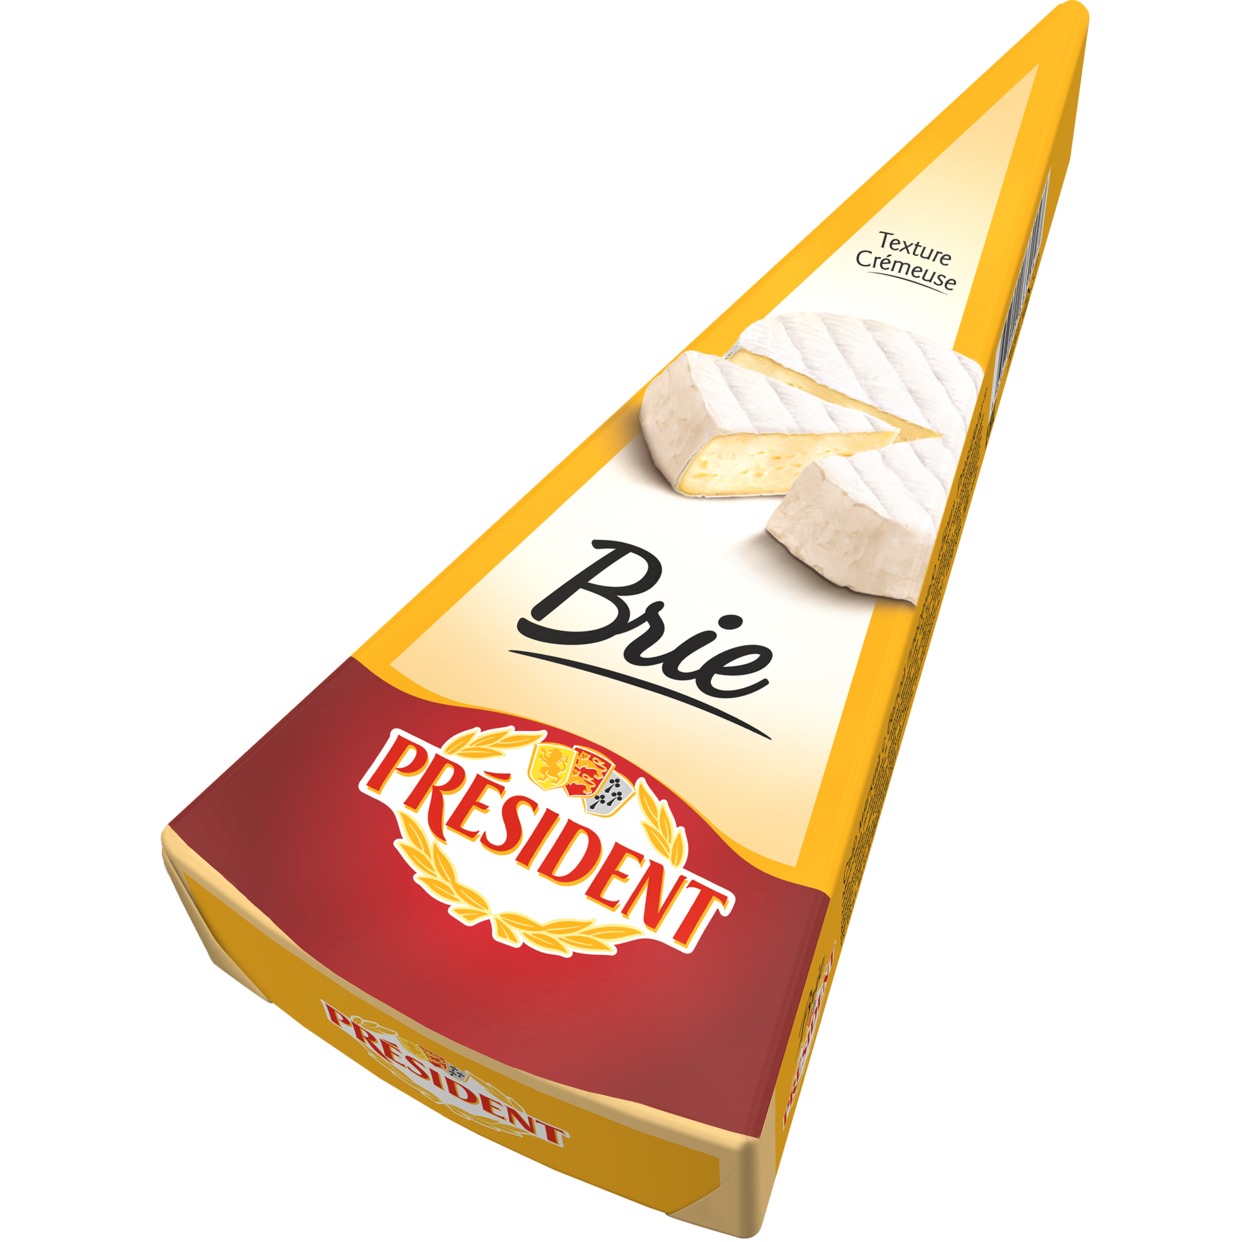 PRESID.Сыр БРИ 60% 200г по акции в Пятерочке